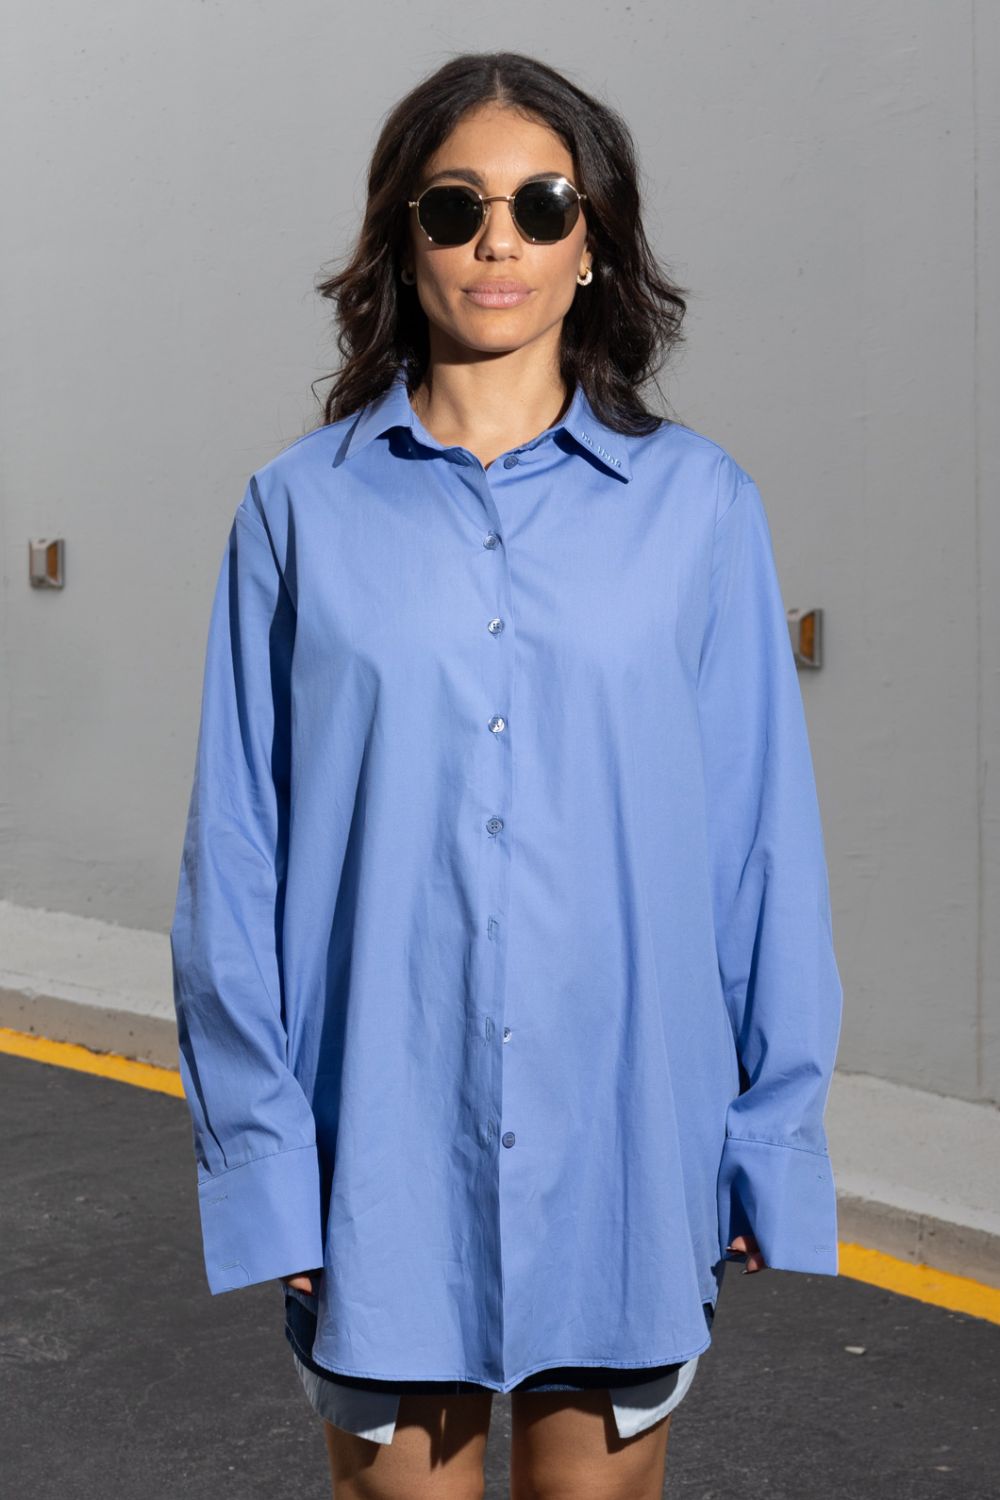 Oversized Shirt Whitney Houston Blue